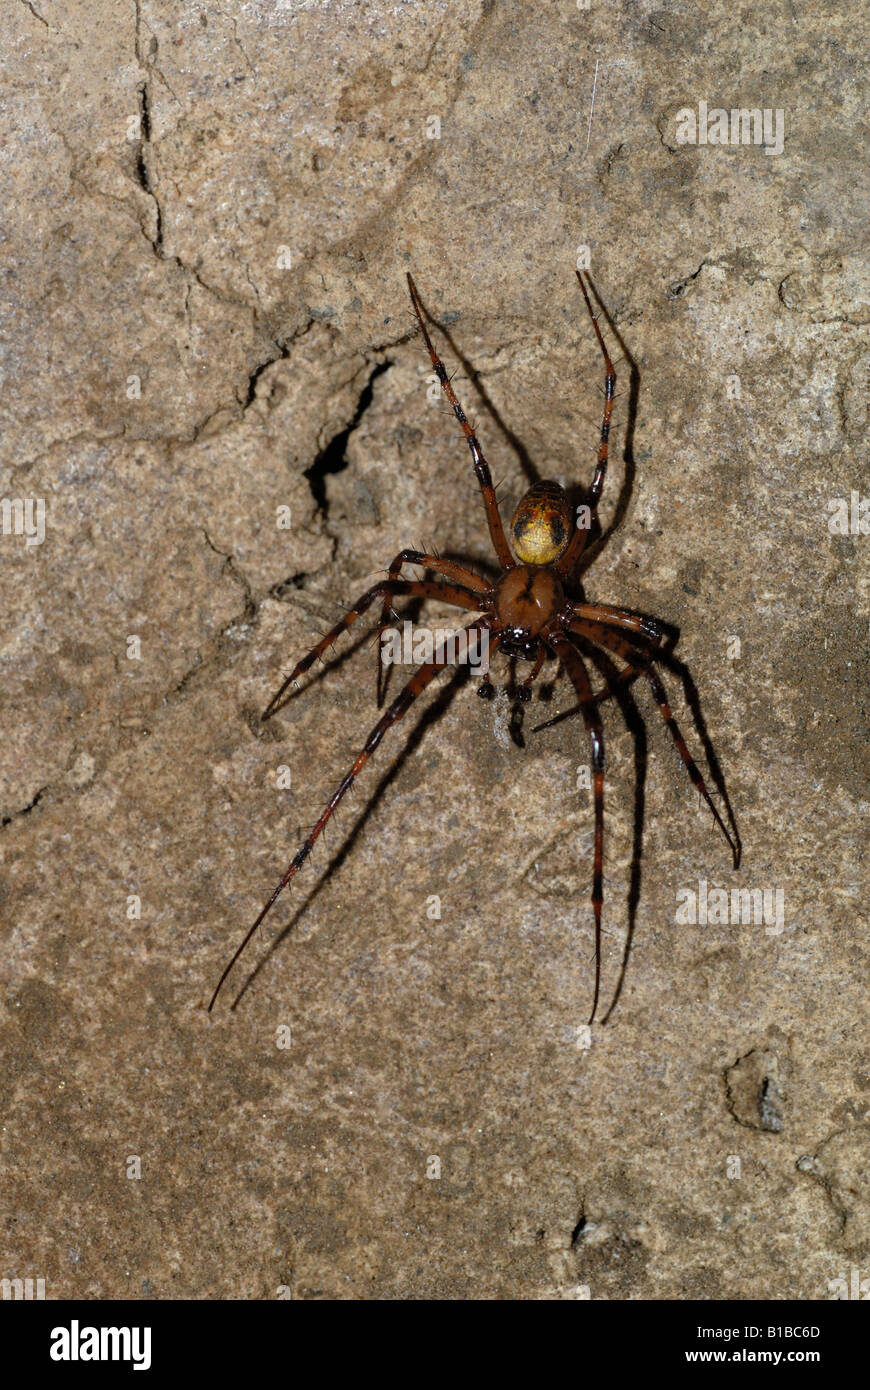 Male European Cave Spider (Meta menardi) Stock Photo